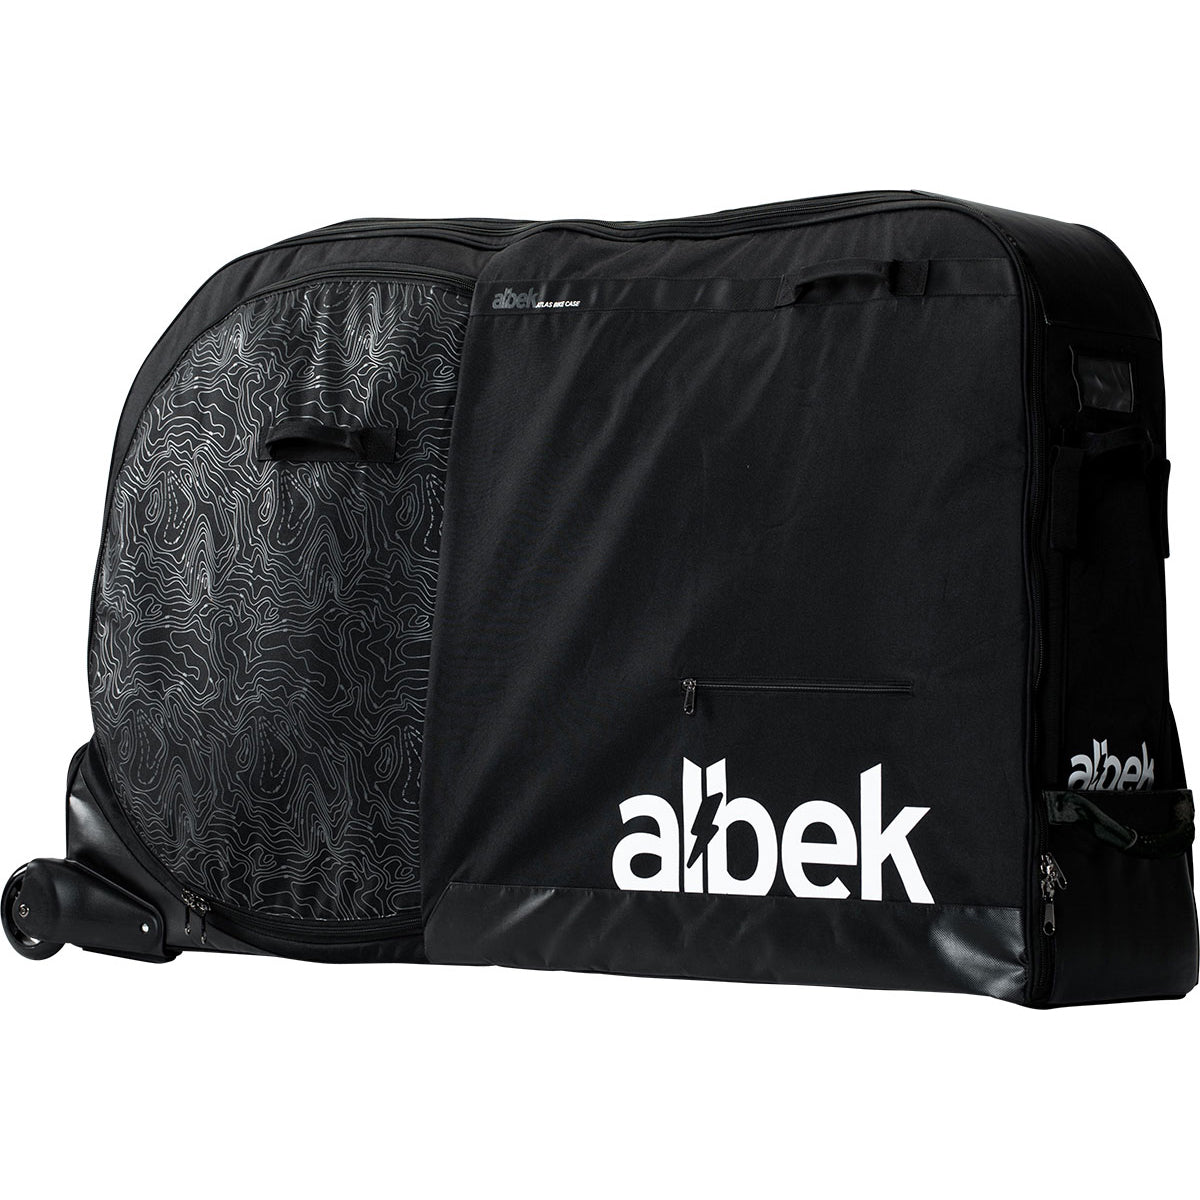 Albek Atlas Bike Bag - Covert Black